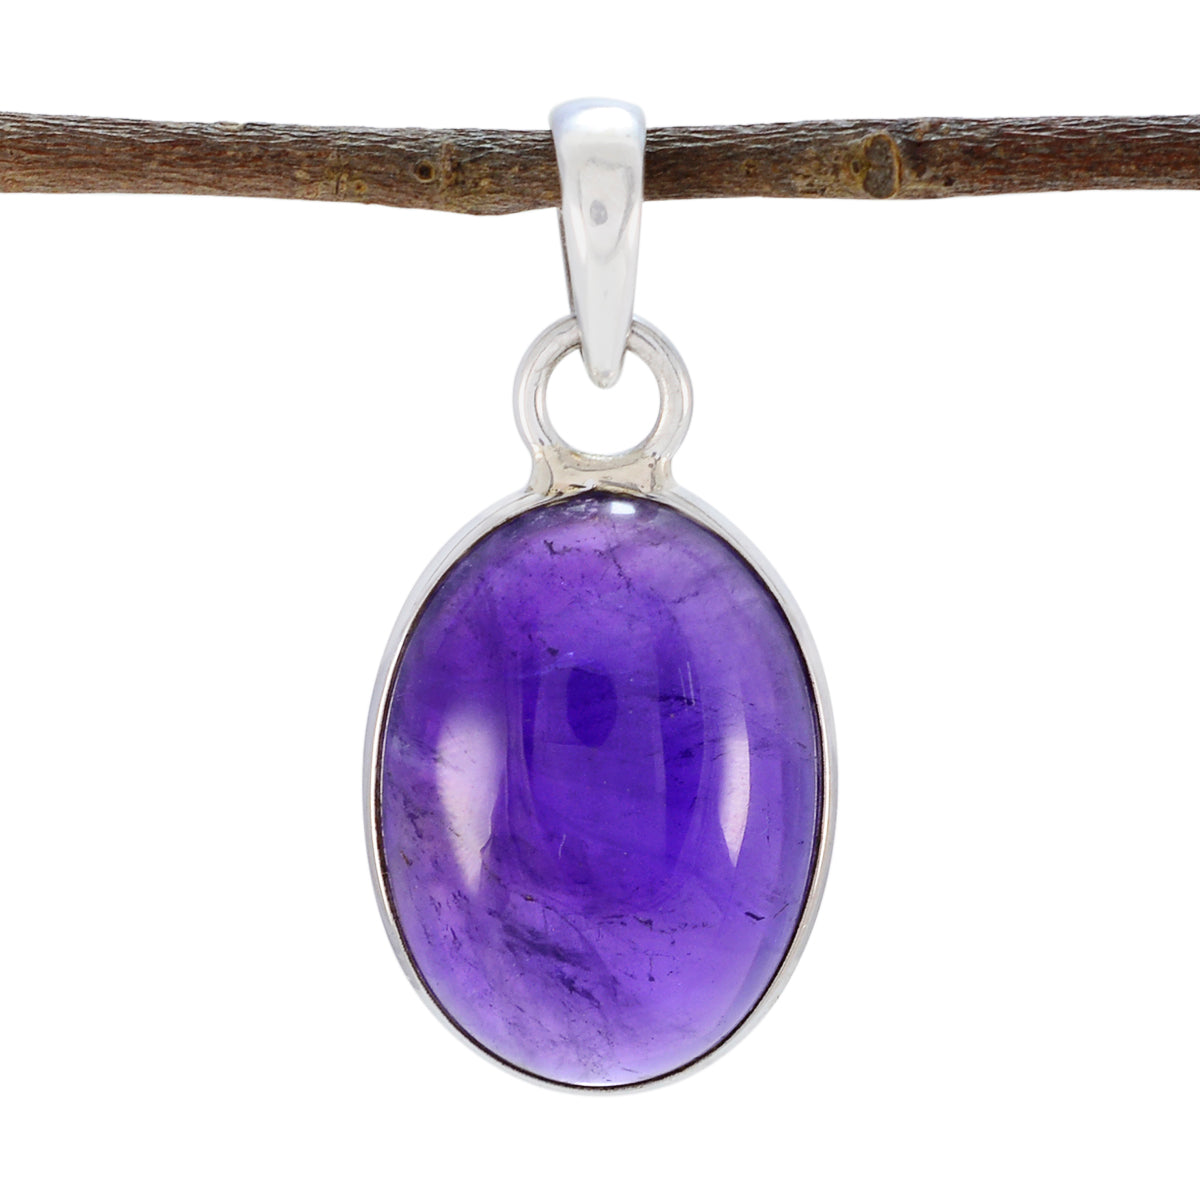 Riyo superbes pierres précieuses ovale cabochon violet améthyste pendentif en argent cadeau pour fiançailles